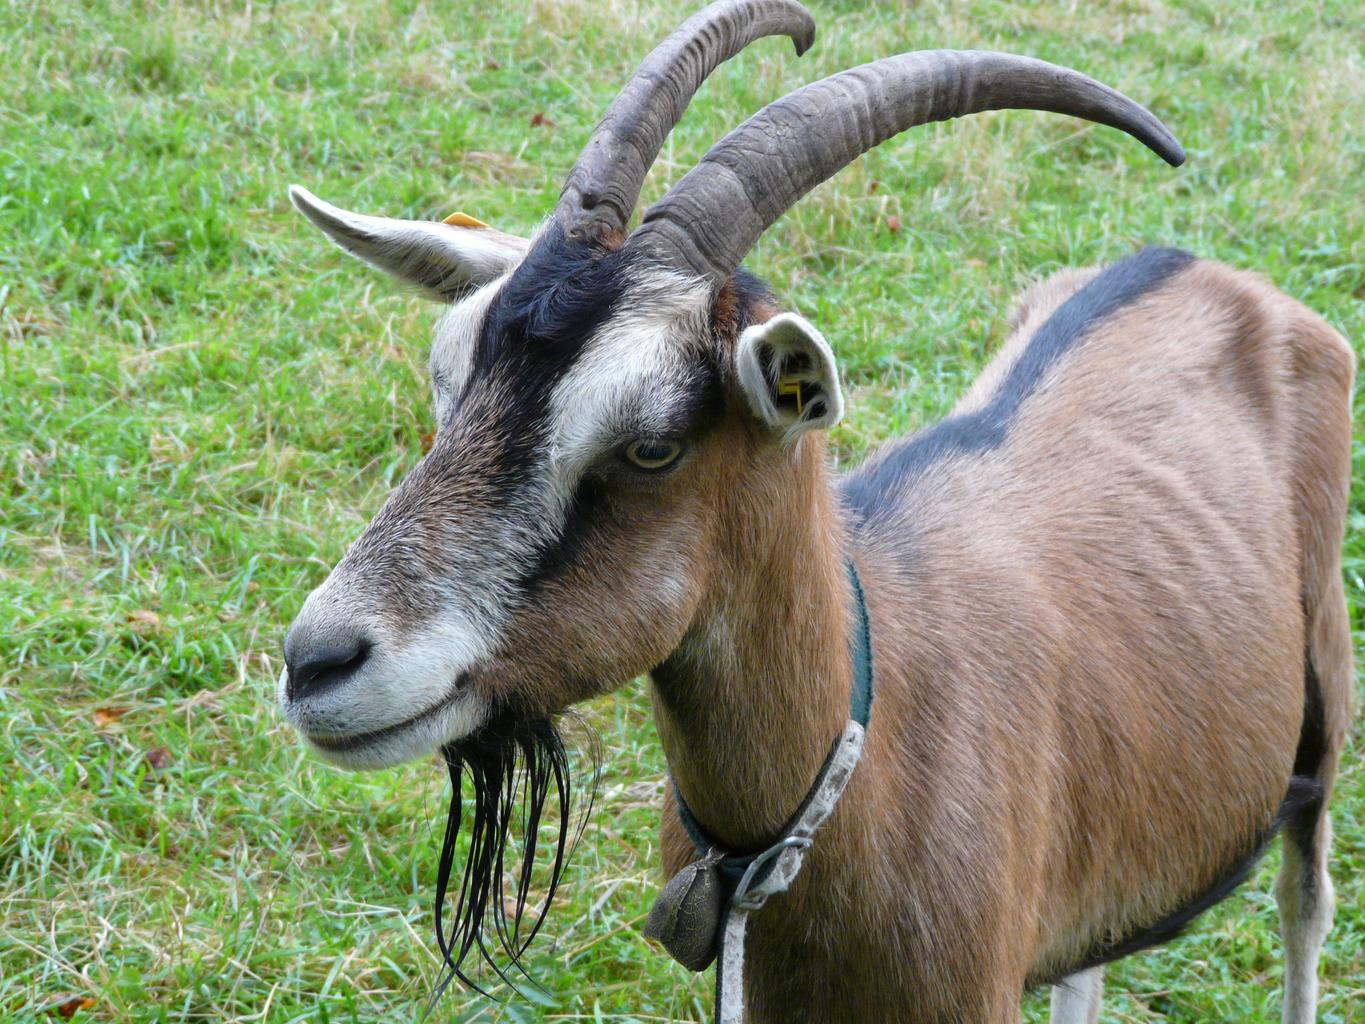 Toestandards goat